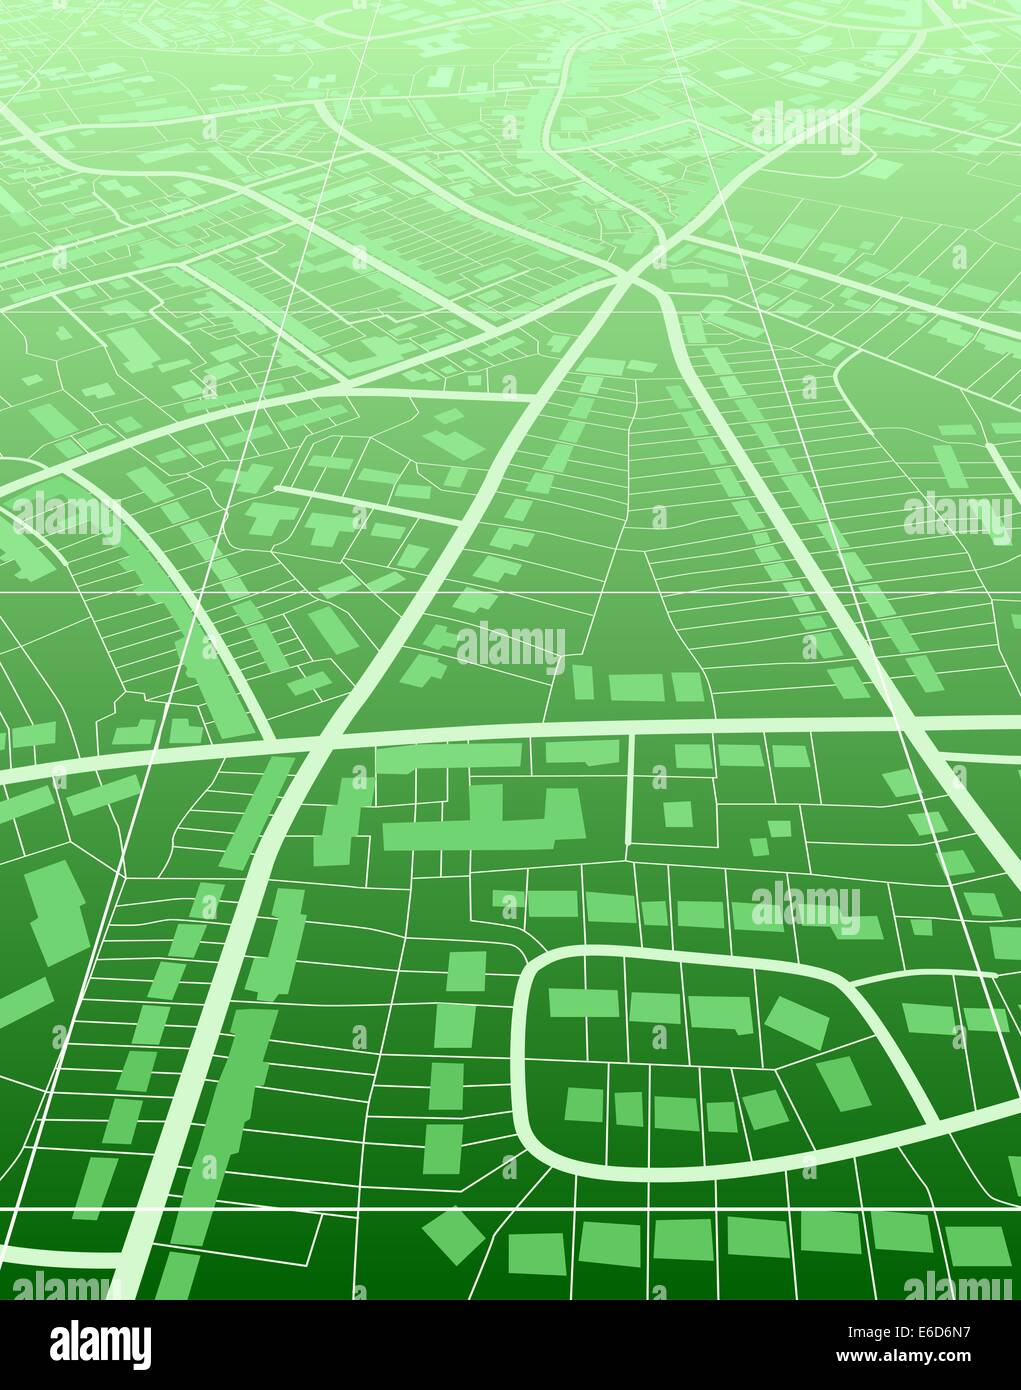 Modificabile illustrazione vettoriale di un generico green street mappa senza nome Illustrazione Vettoriale